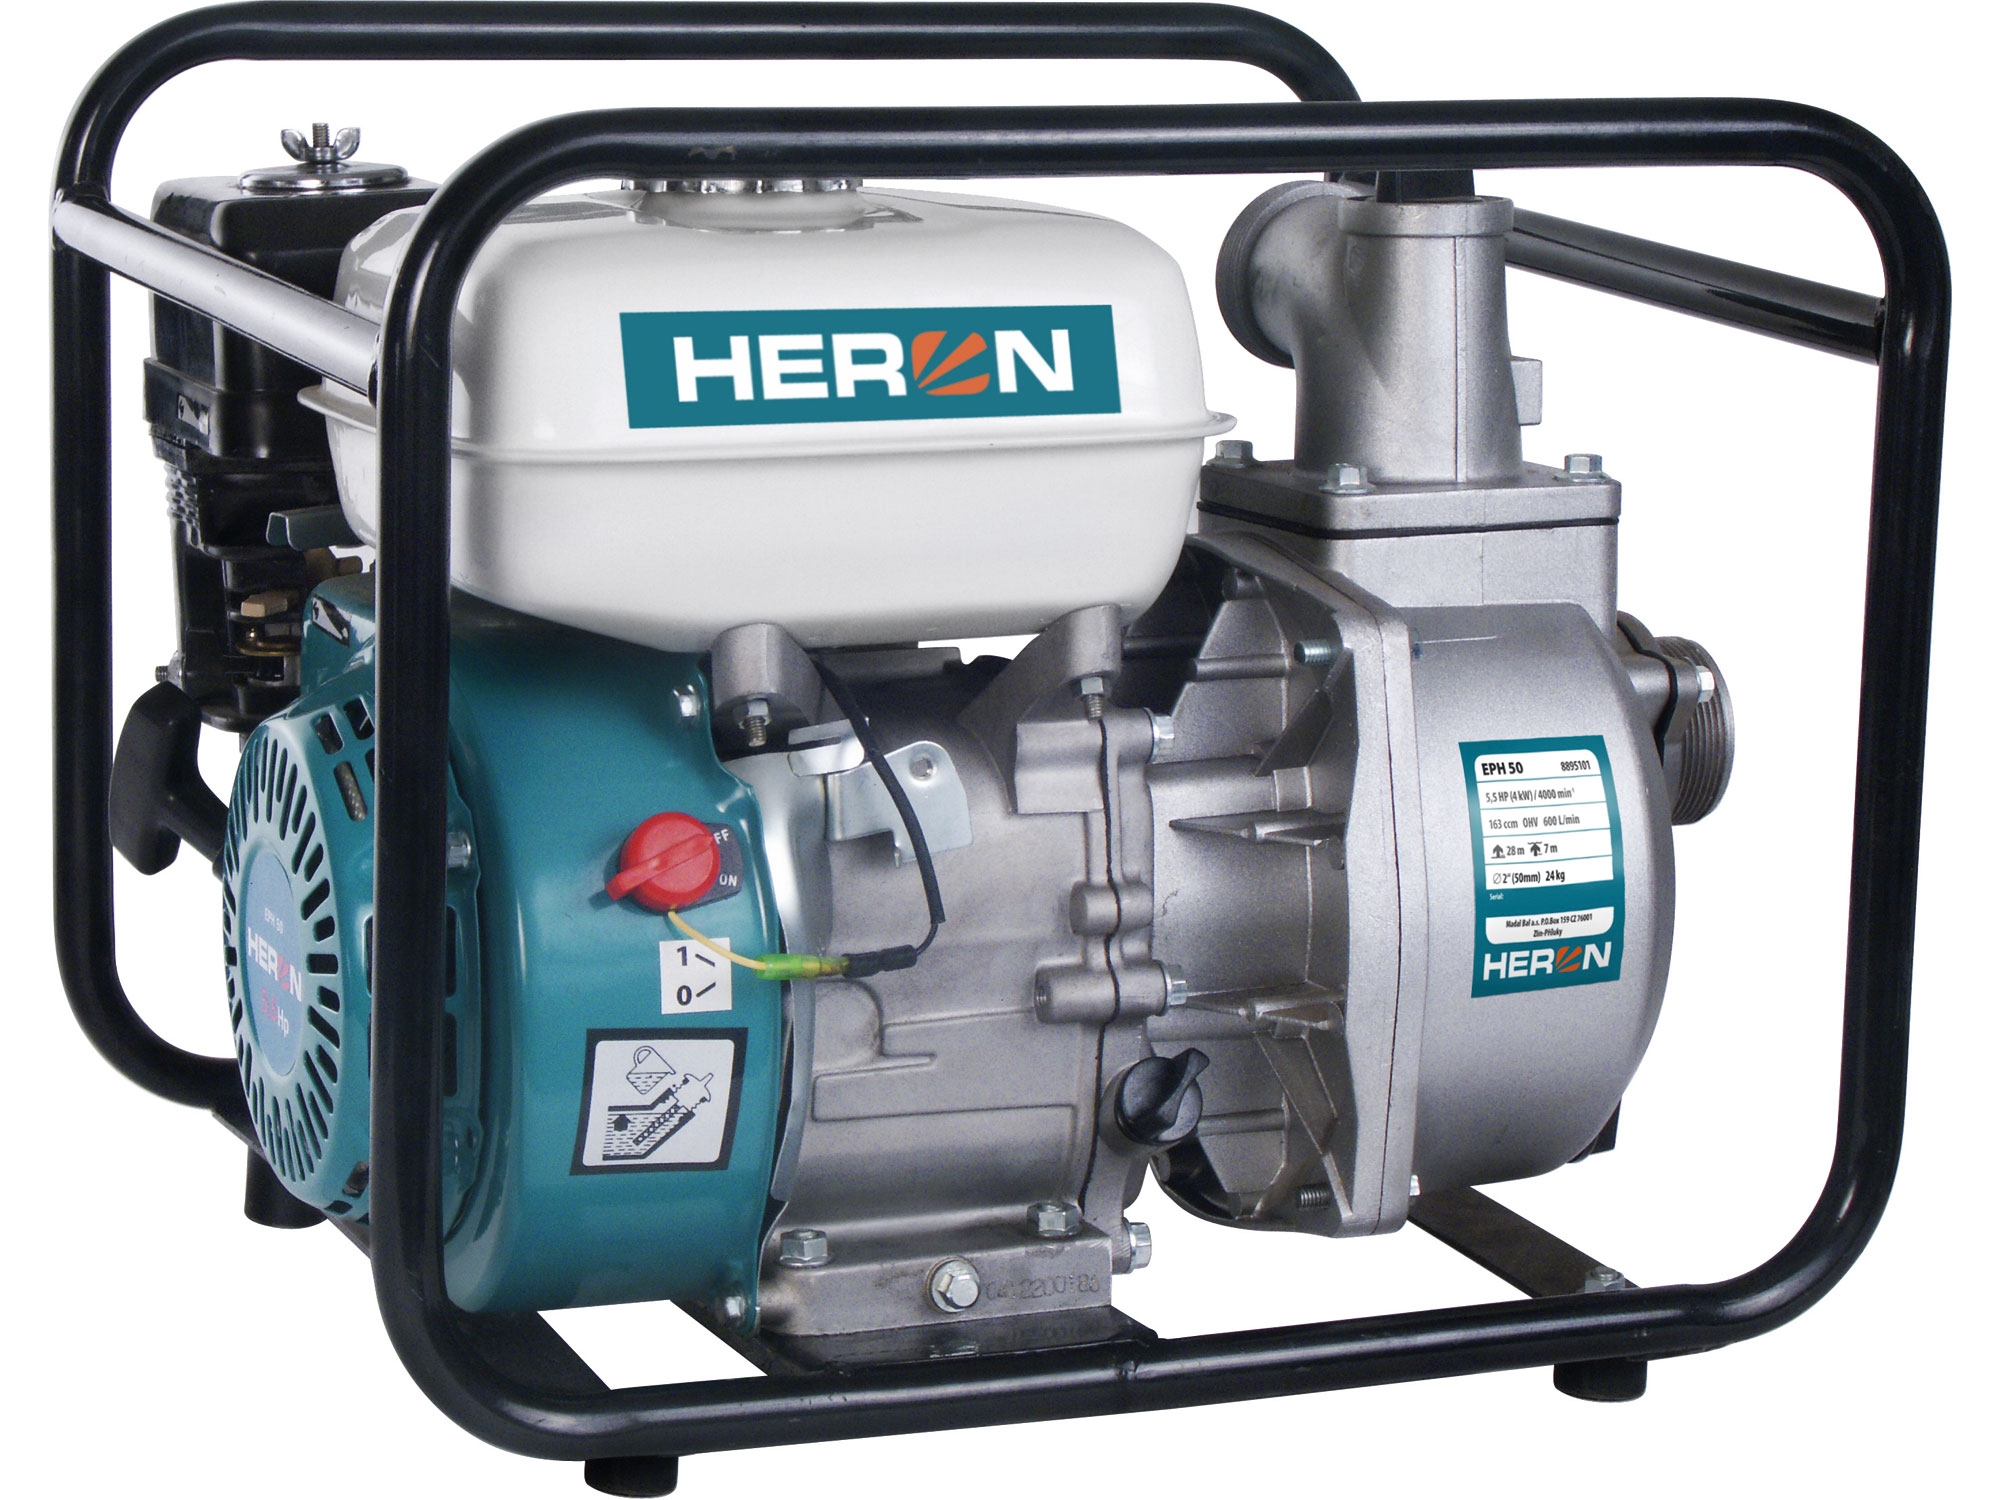 čerpadlo motorové proudové 5,5HP, 600l/min, HERON EPH 50 8895101